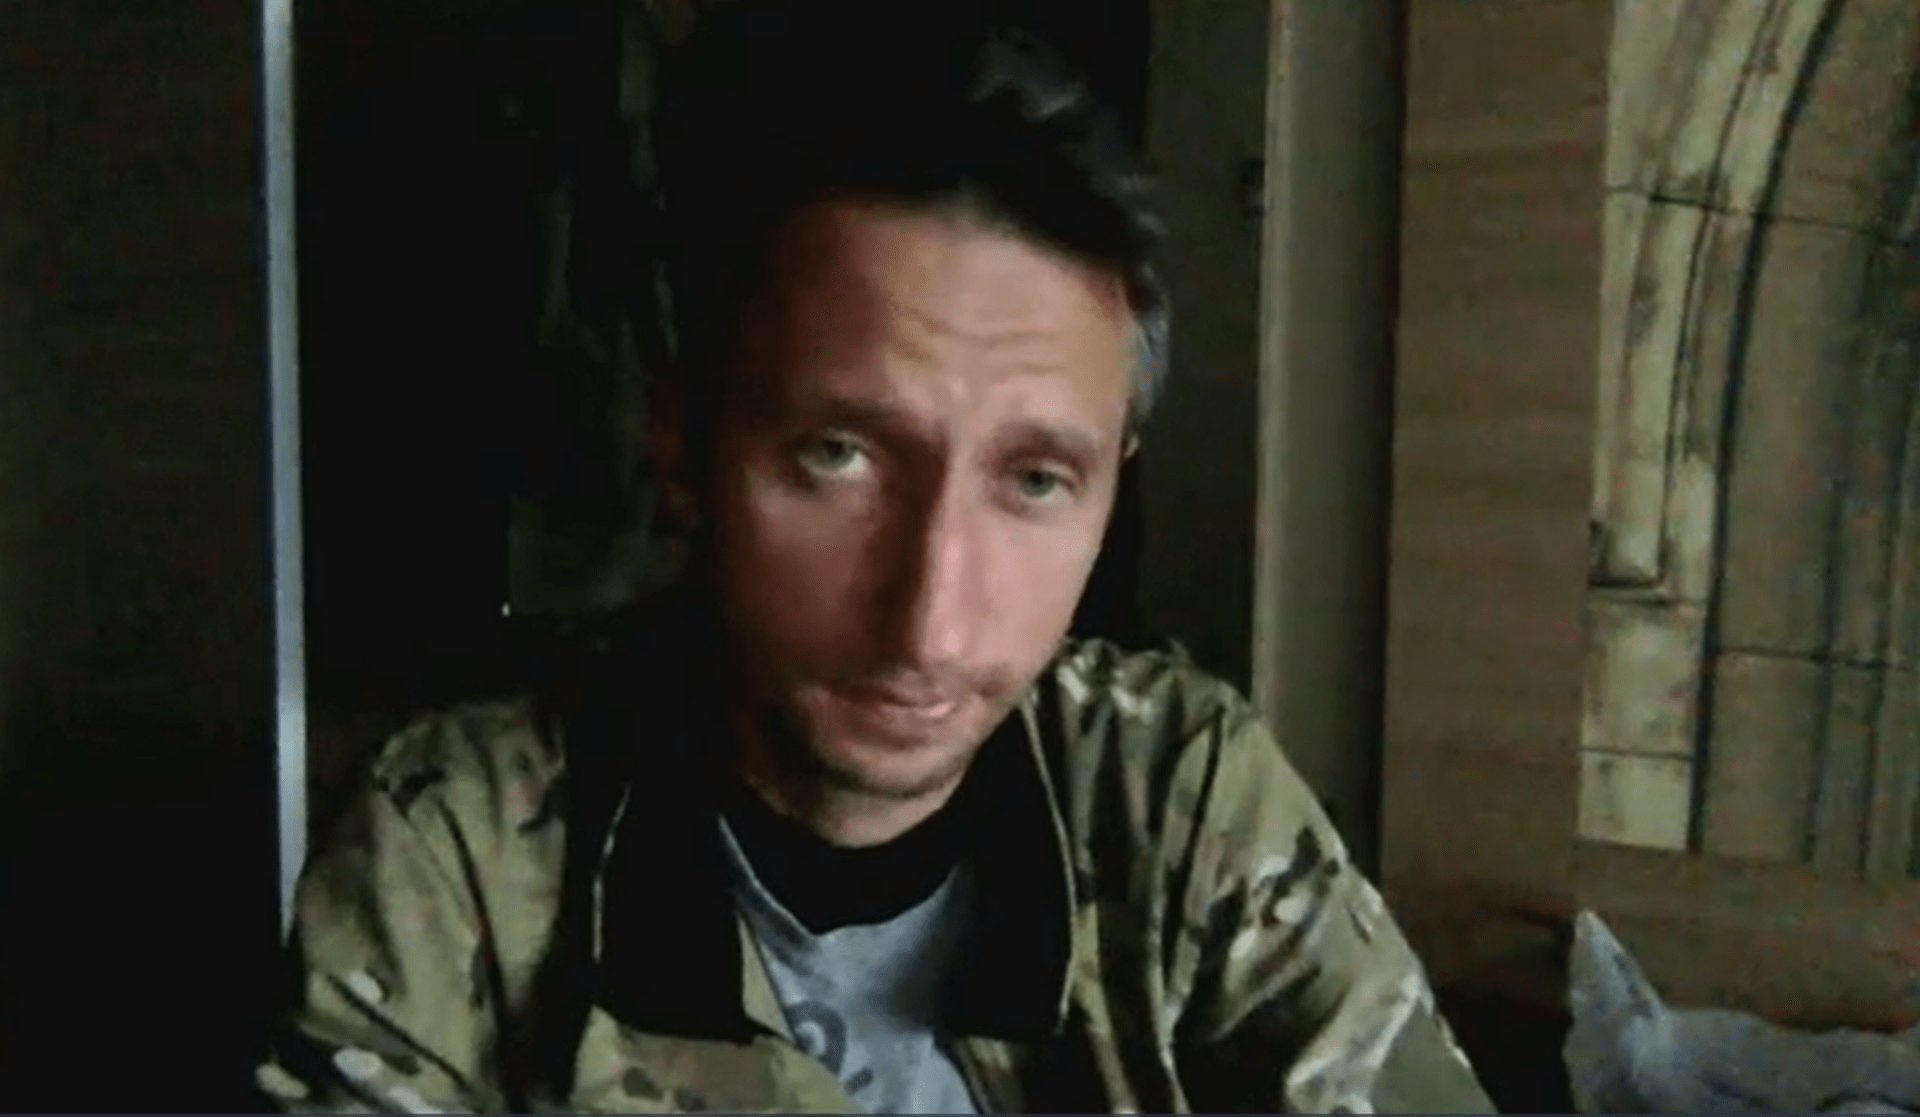 Serhij Stachovskyj mluvil v rozhovoru pro CNN o tom, jak bylo těžké opustit rodinu a narukovat do války.